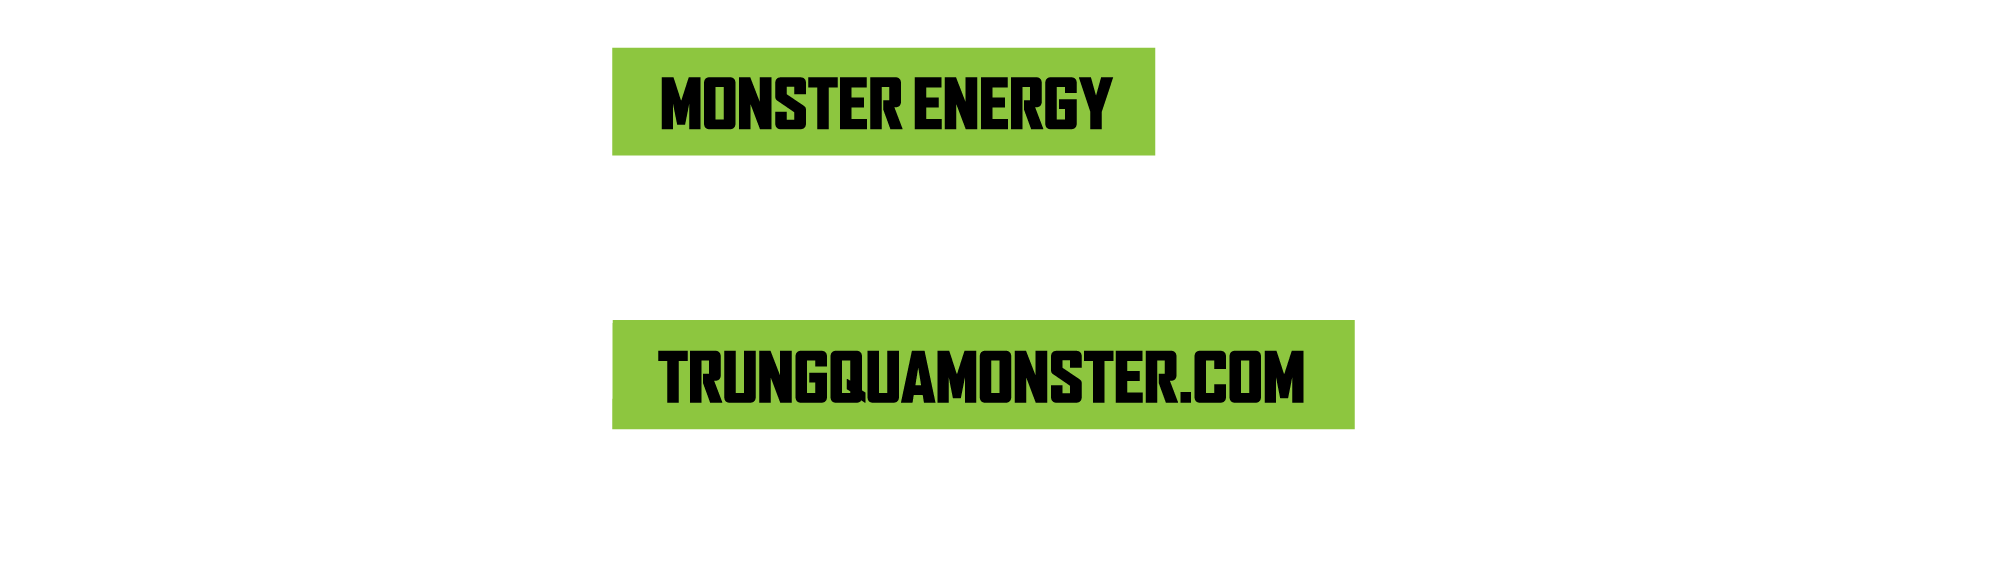 mua monster energy